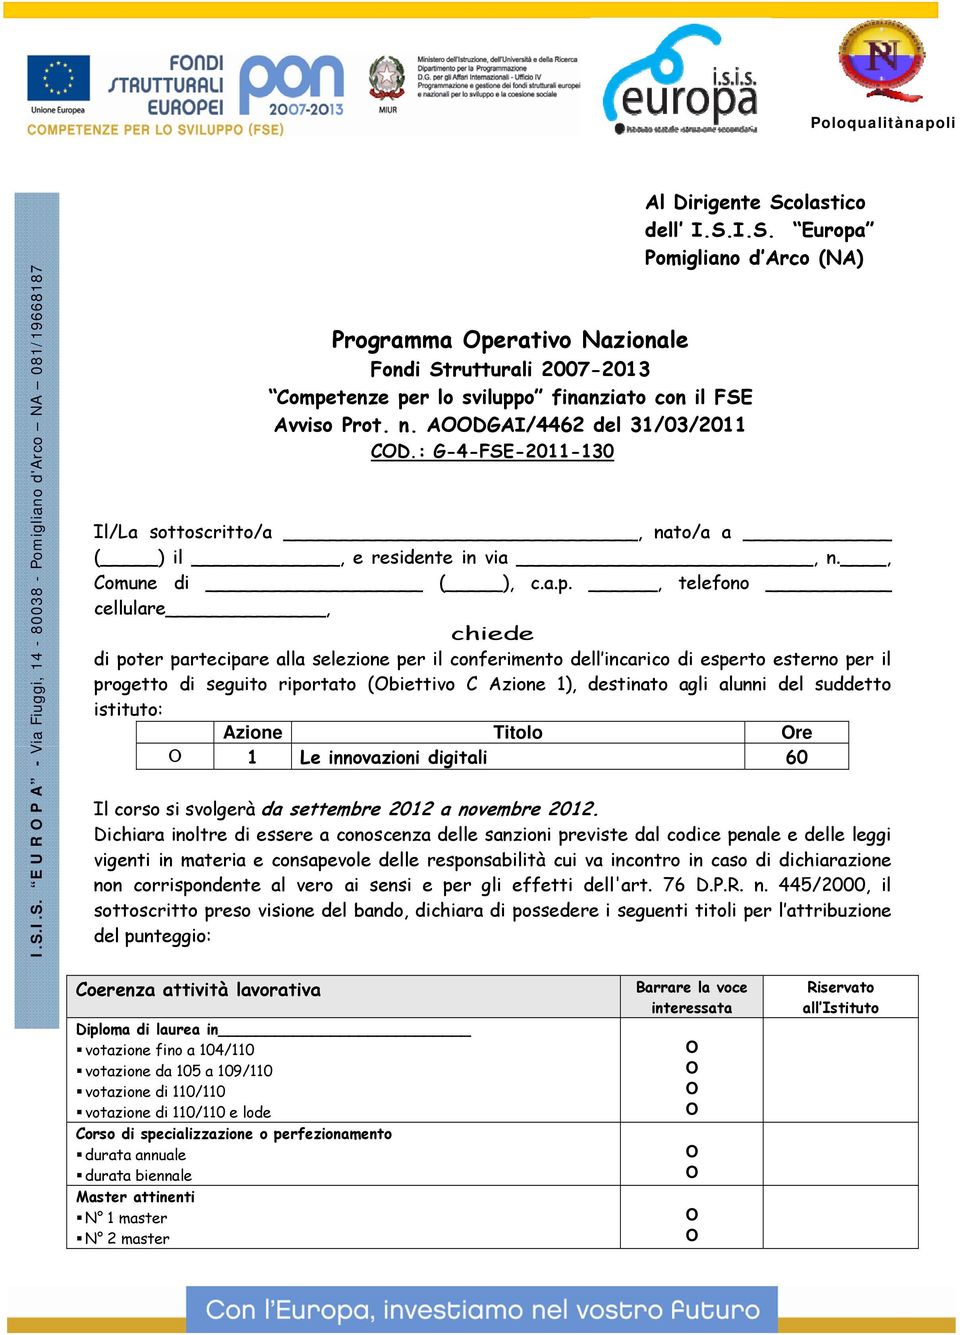 ADGAI/4462 del 31/03/2011 CD.: G-4-FSE-2011-130 Al Dirigente Scolastico dell I.S.I.S. Europa